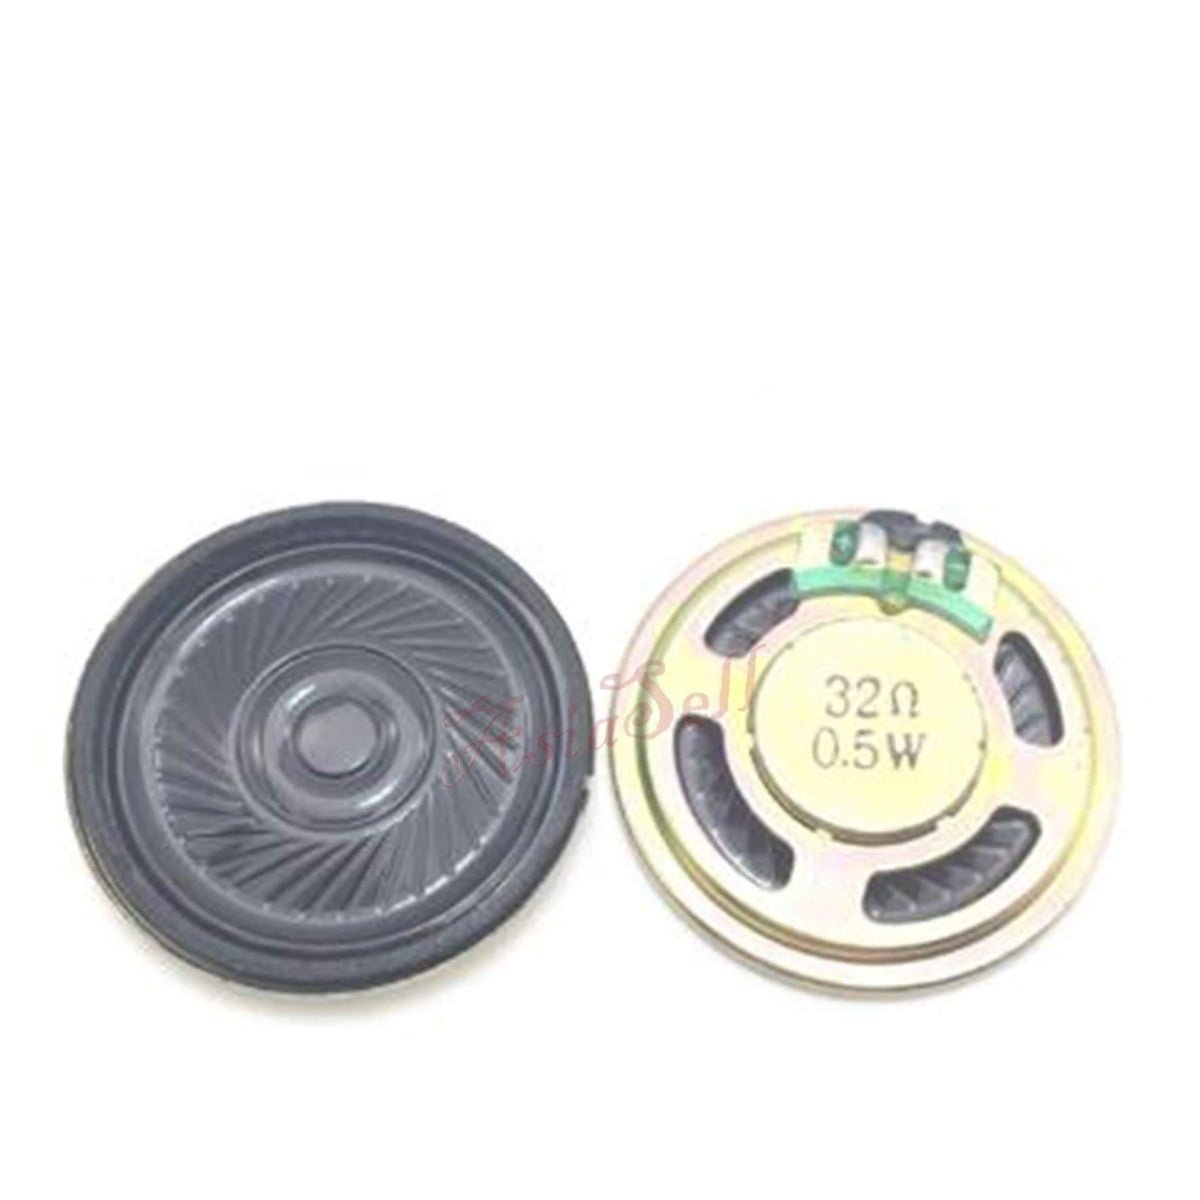 2Pcs Speaker Horn 0.25-3W 4-32Ohm Ultra Thin Horns Speakers